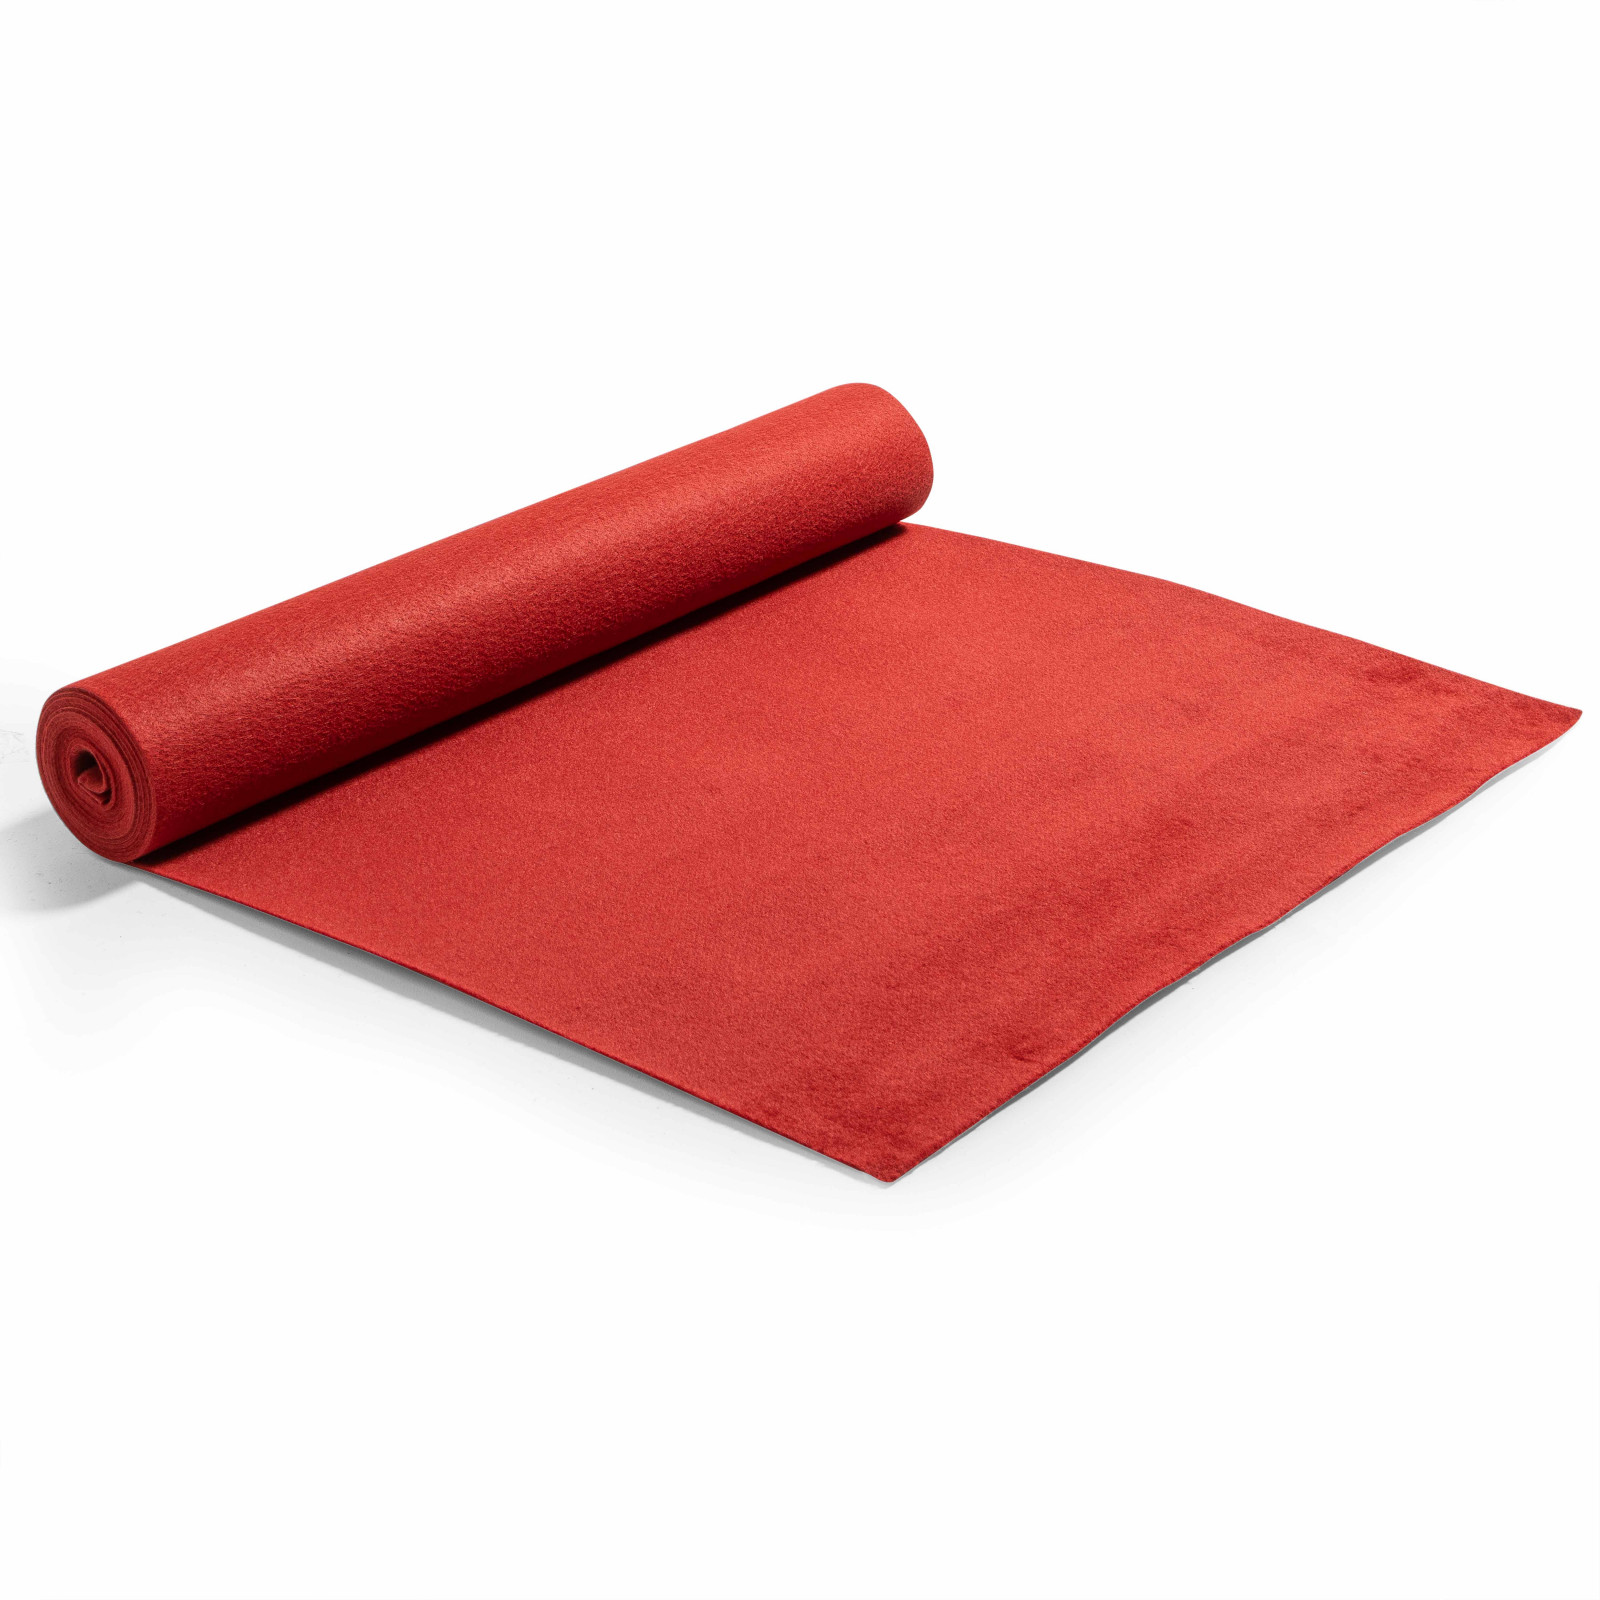 Rouleau de moquette rouge de 2 x 5m en polyester 250g/m²